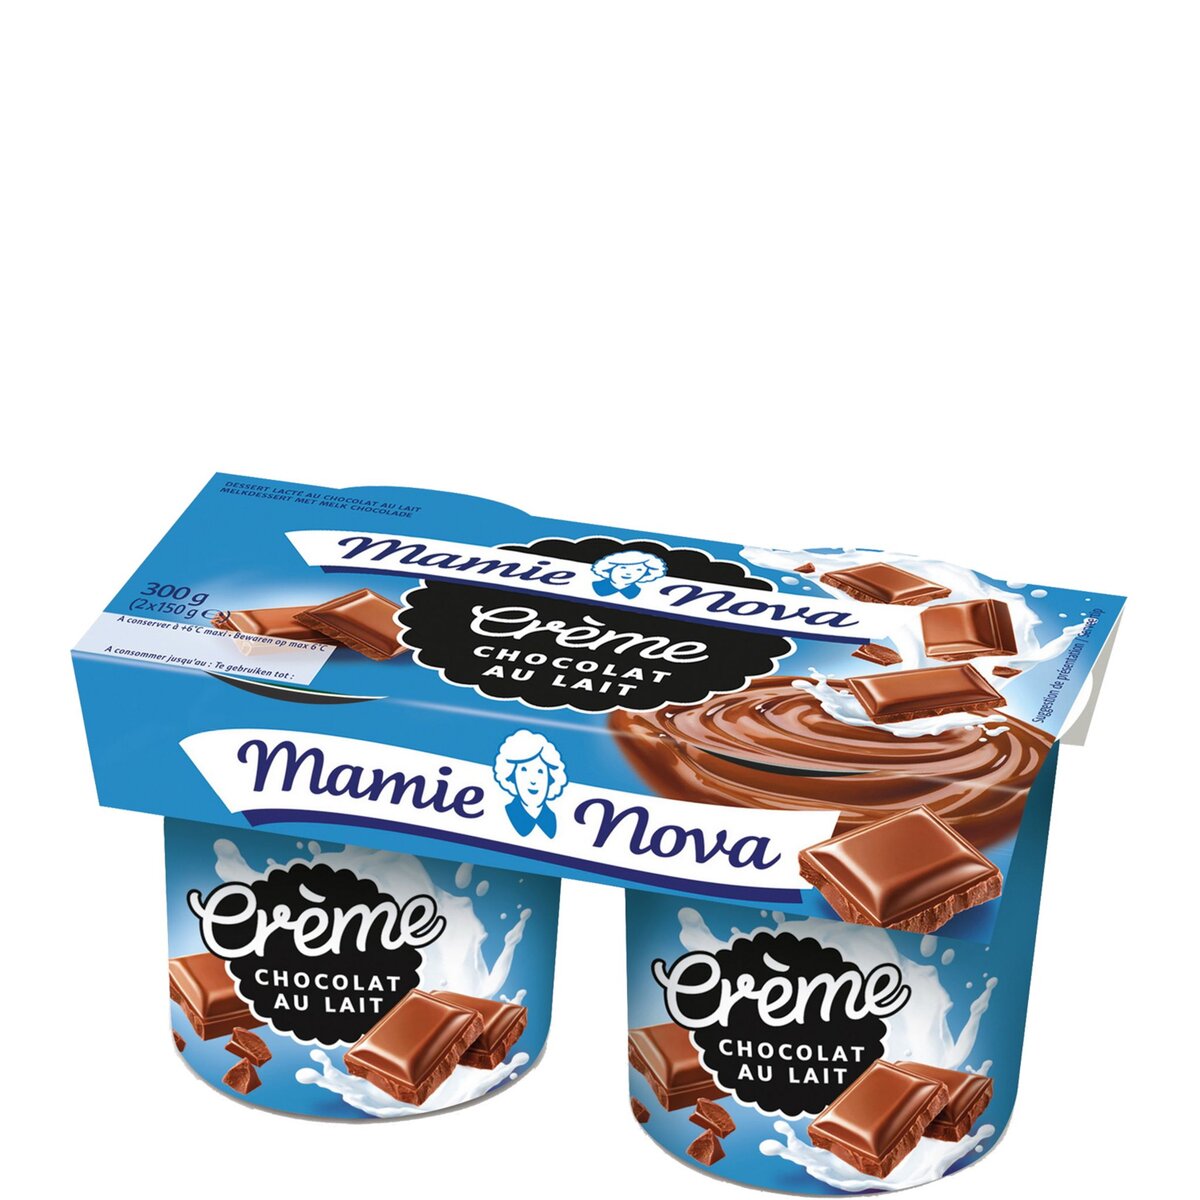 MAMIE NOVA Nova gourmand crème chocolat au lait 2x150g